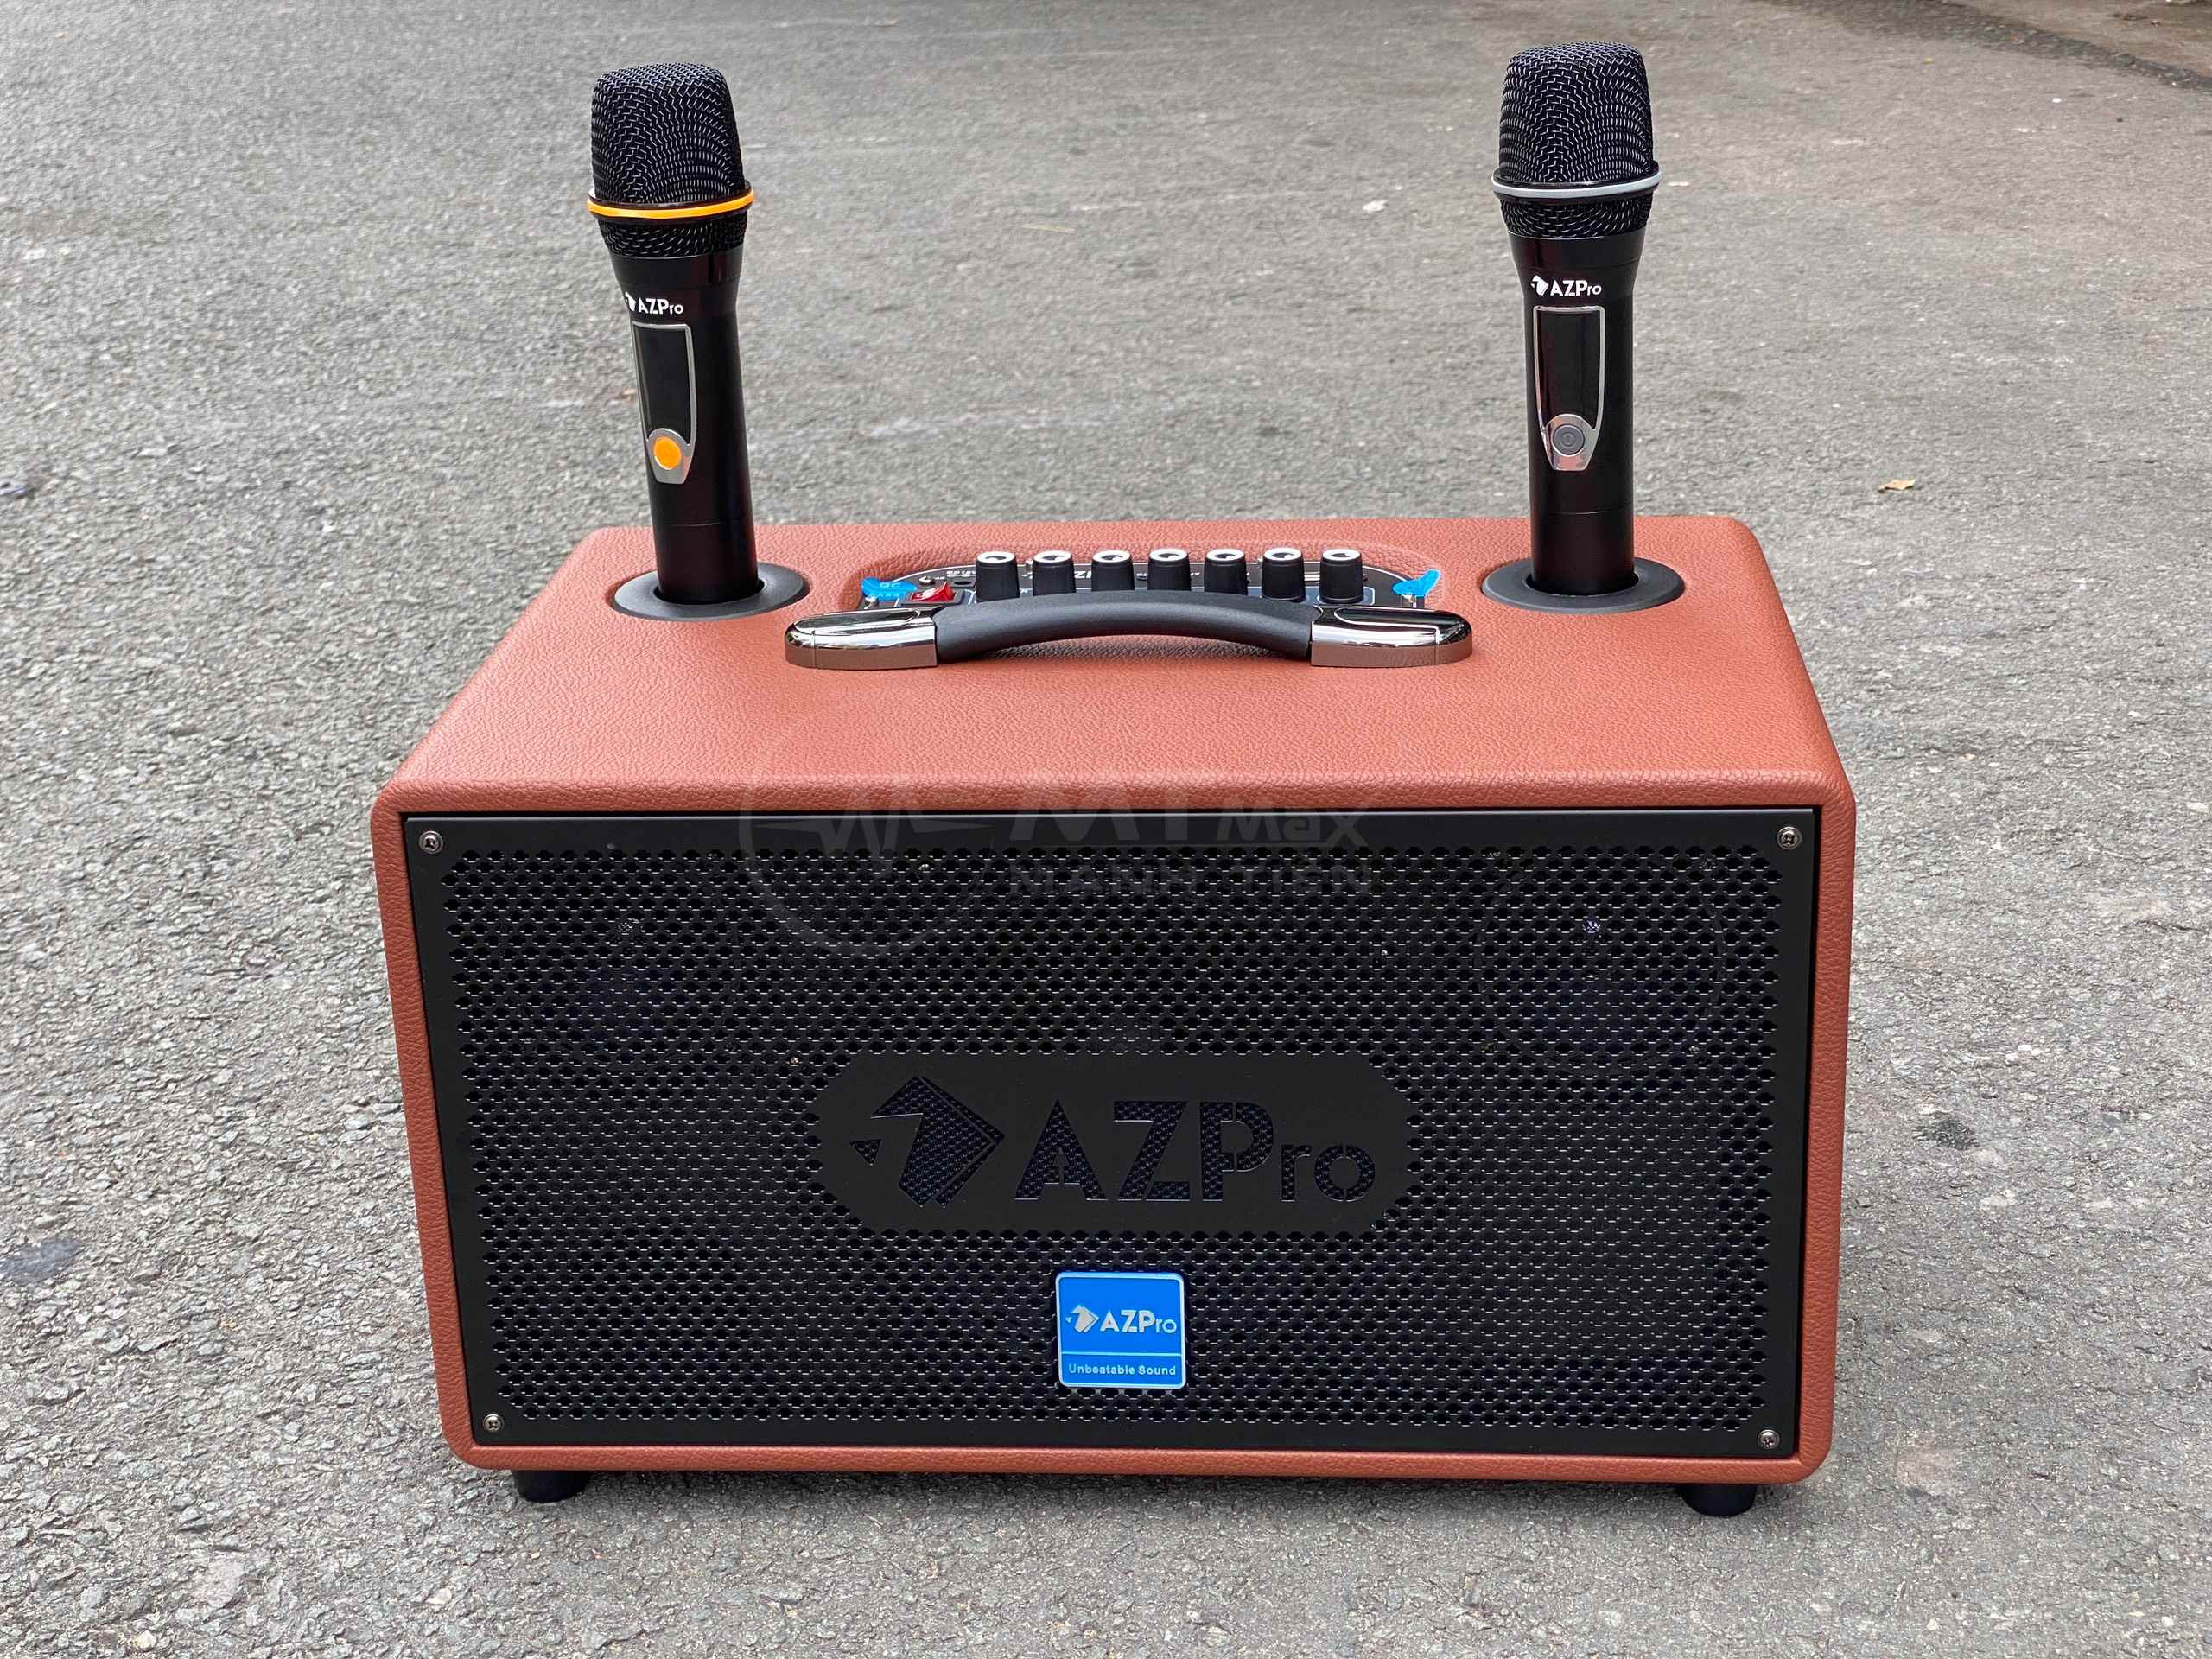 Loa kéo di động AZPro AZ-336 Bass 16 kèm 2 Micro không dây kim loại .Chiếc loa AZ-336 với thiết kế mạnh mẽ vỏ gỗ bọc da tổng hợp, sang trọng, loa bass chắc, âm thanh hơn hẳn các loa ngang tầm giá.